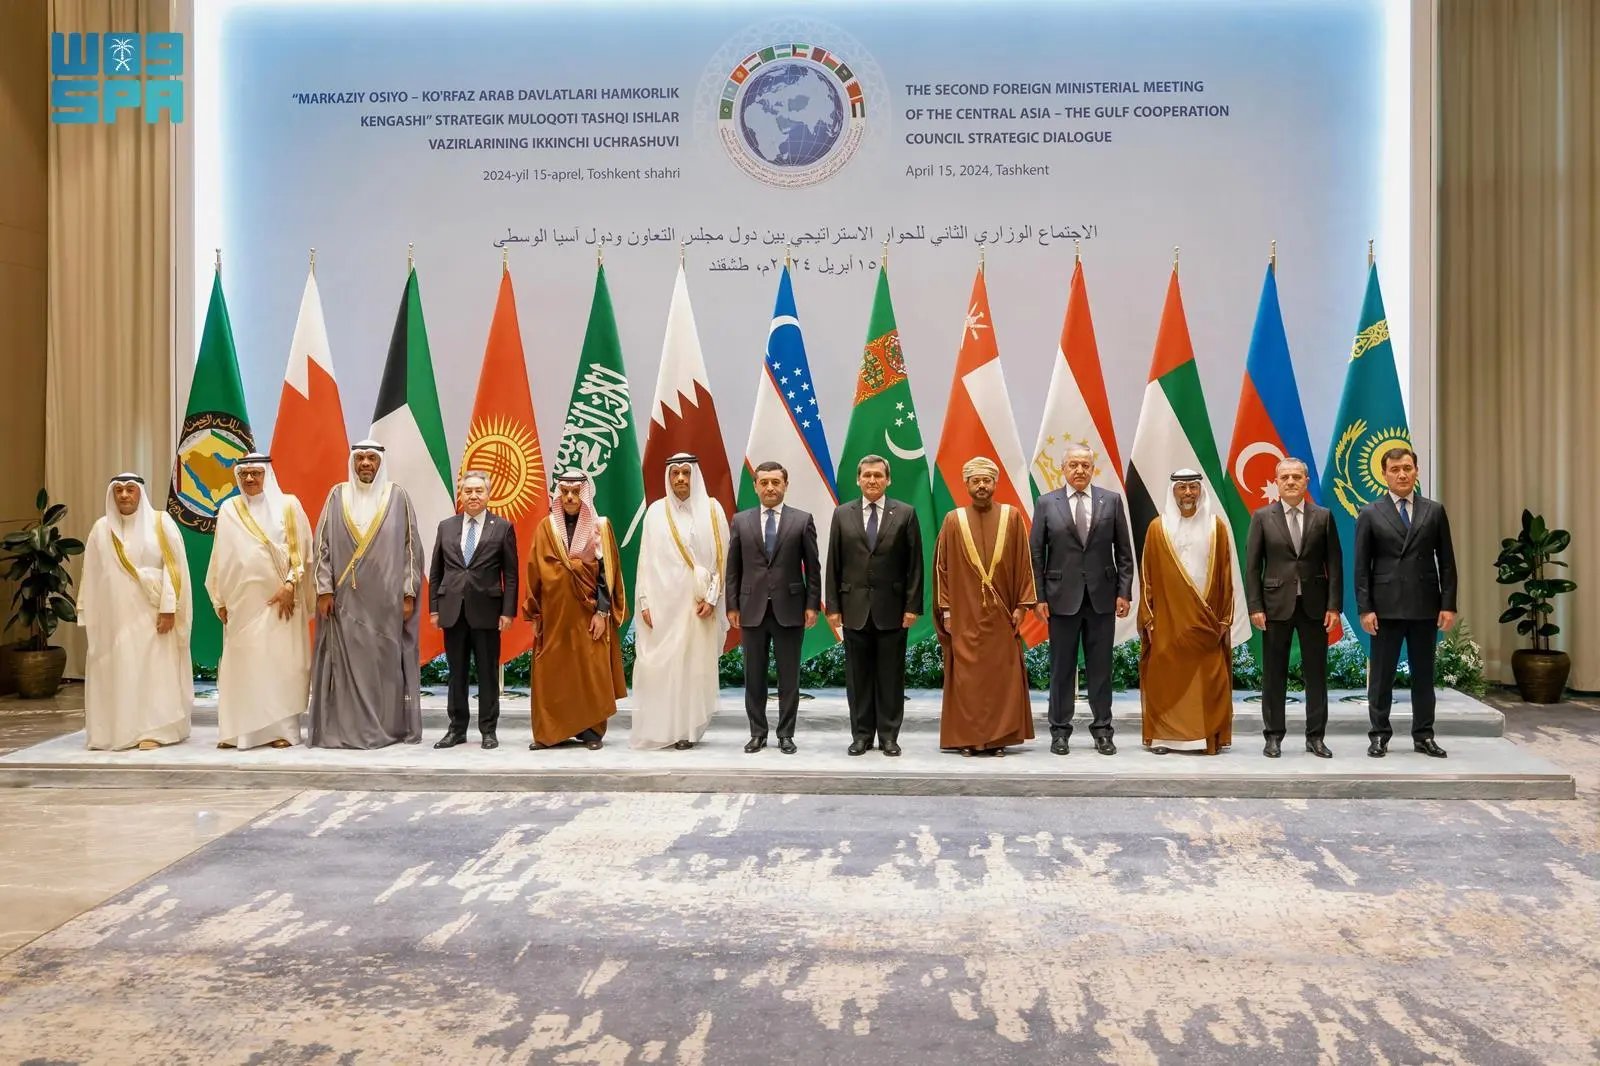 وزير الخارجية يشارك في الحوار الاستراتيجي بين دول الخليج ودول آسيا الوسطى